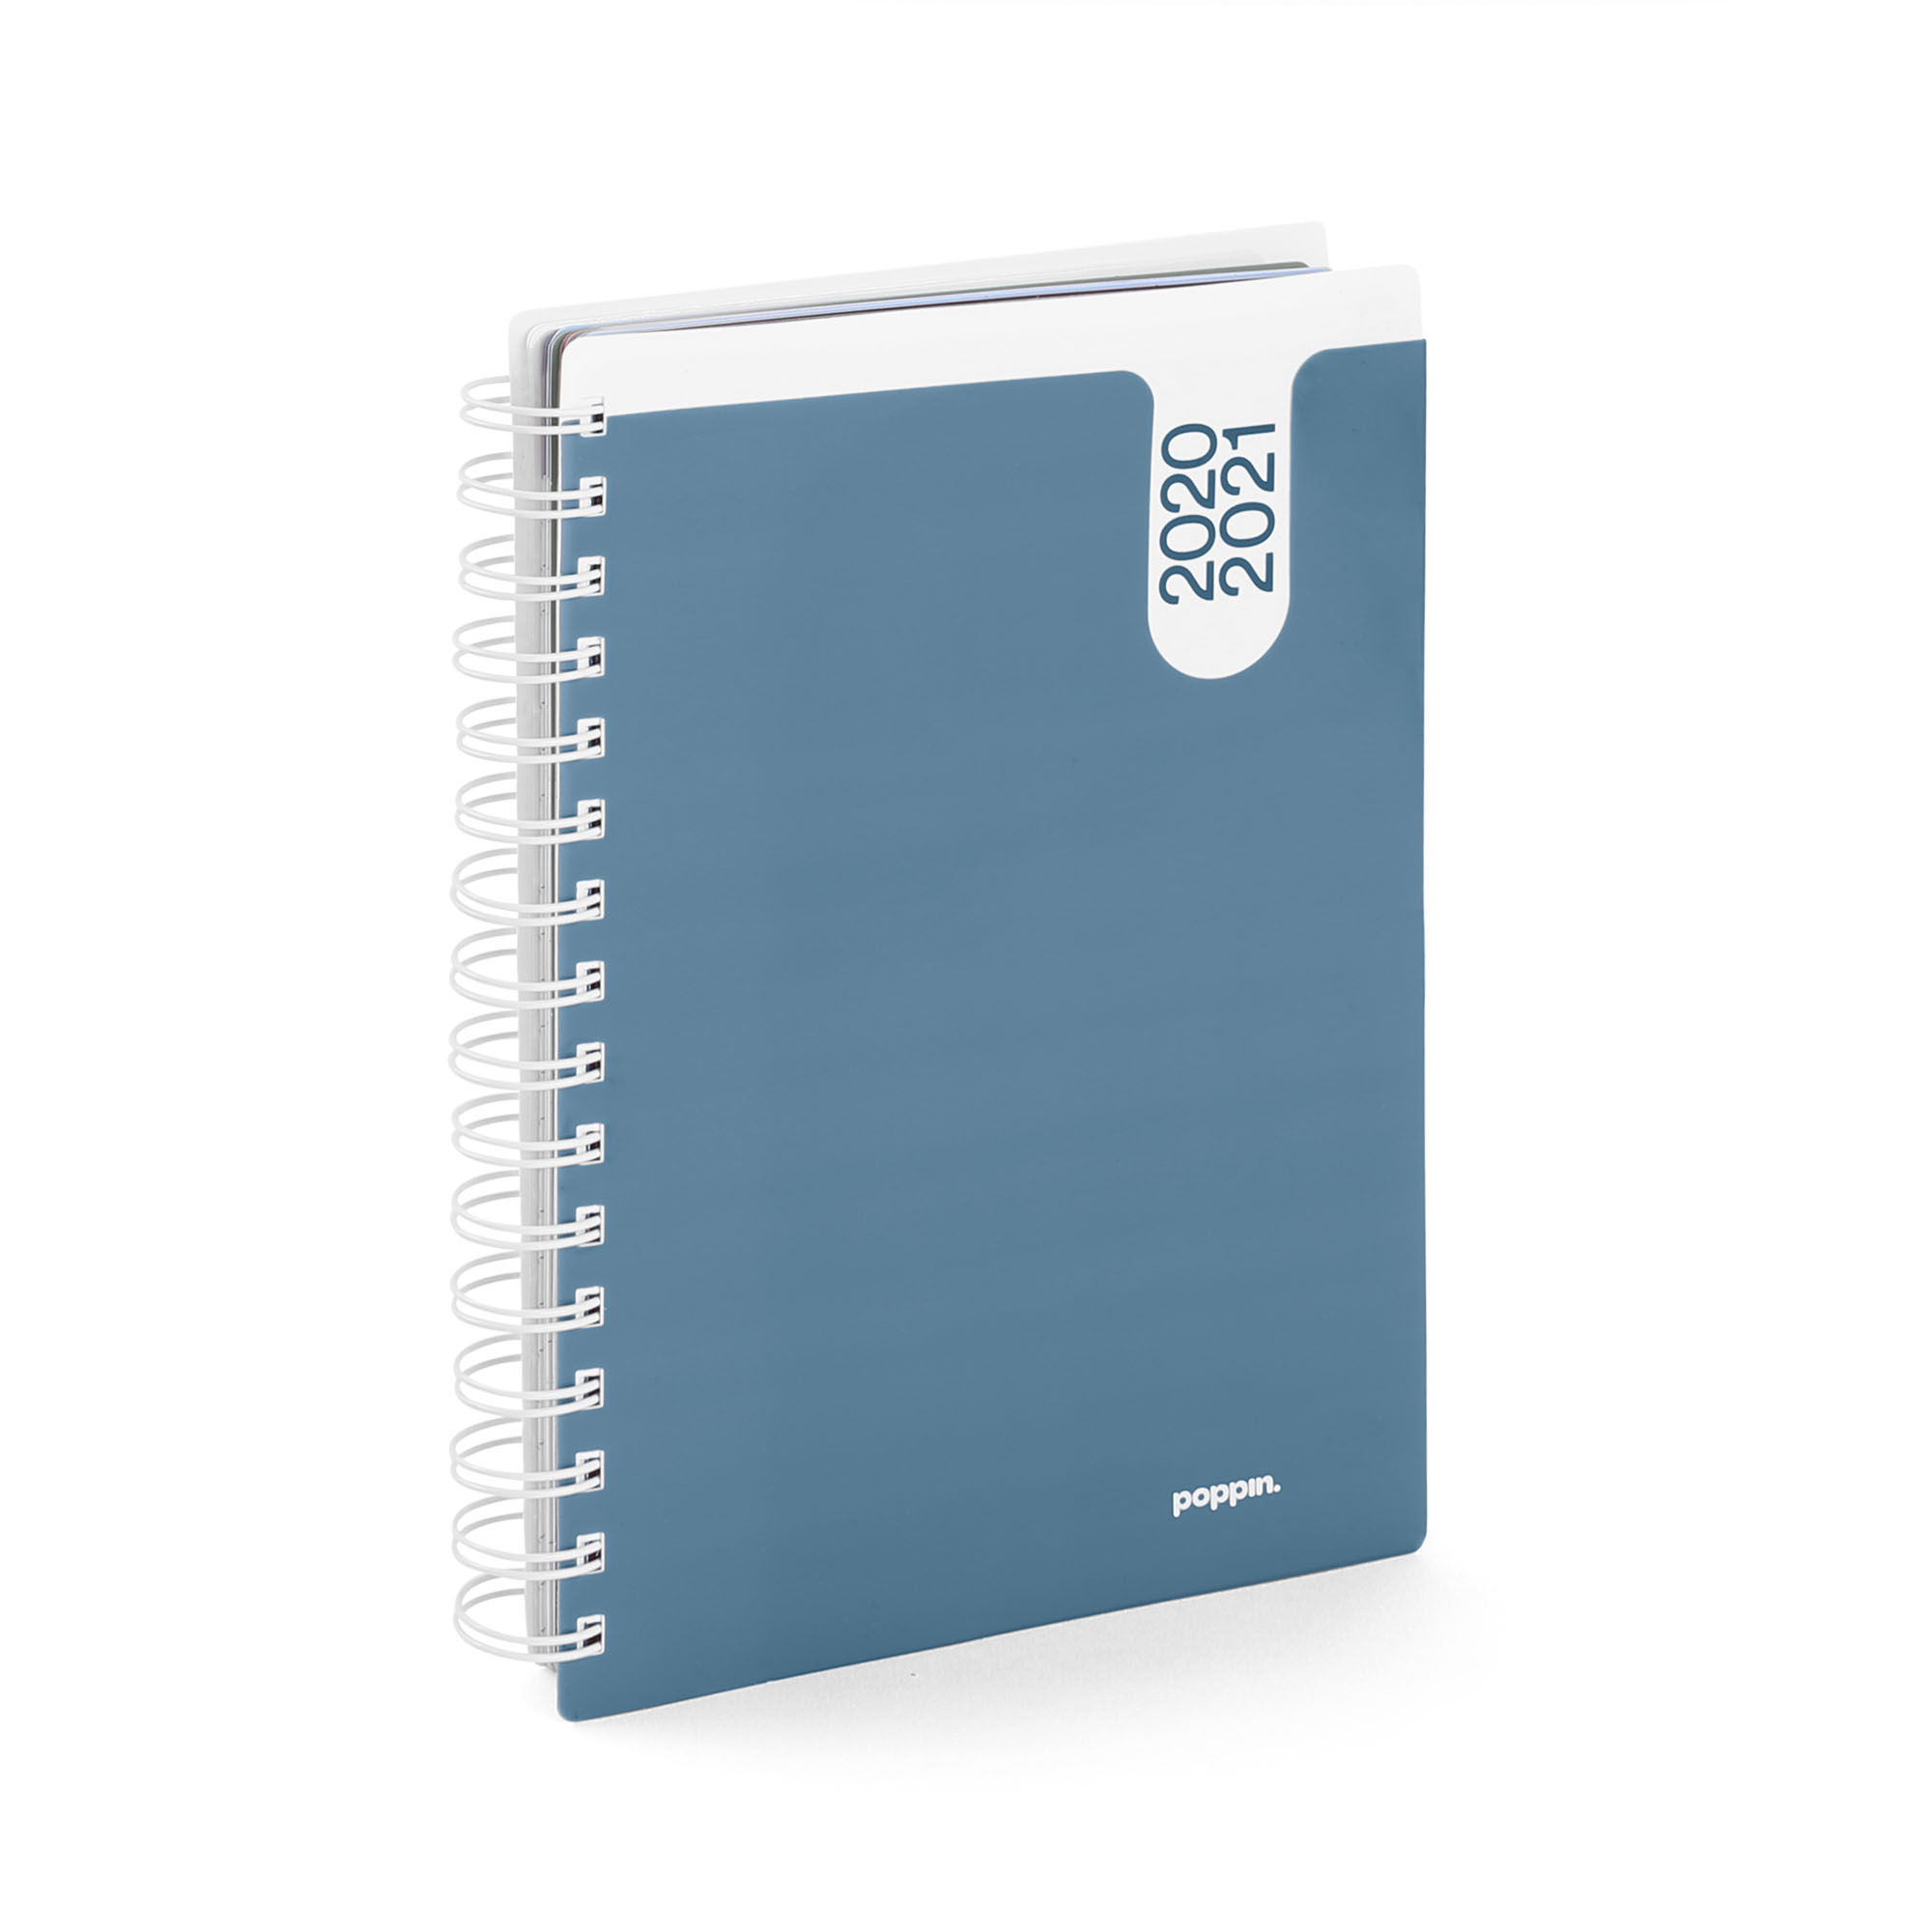 Slate Blue Medium 18 Month Pocket Book Planner, 2020-2021